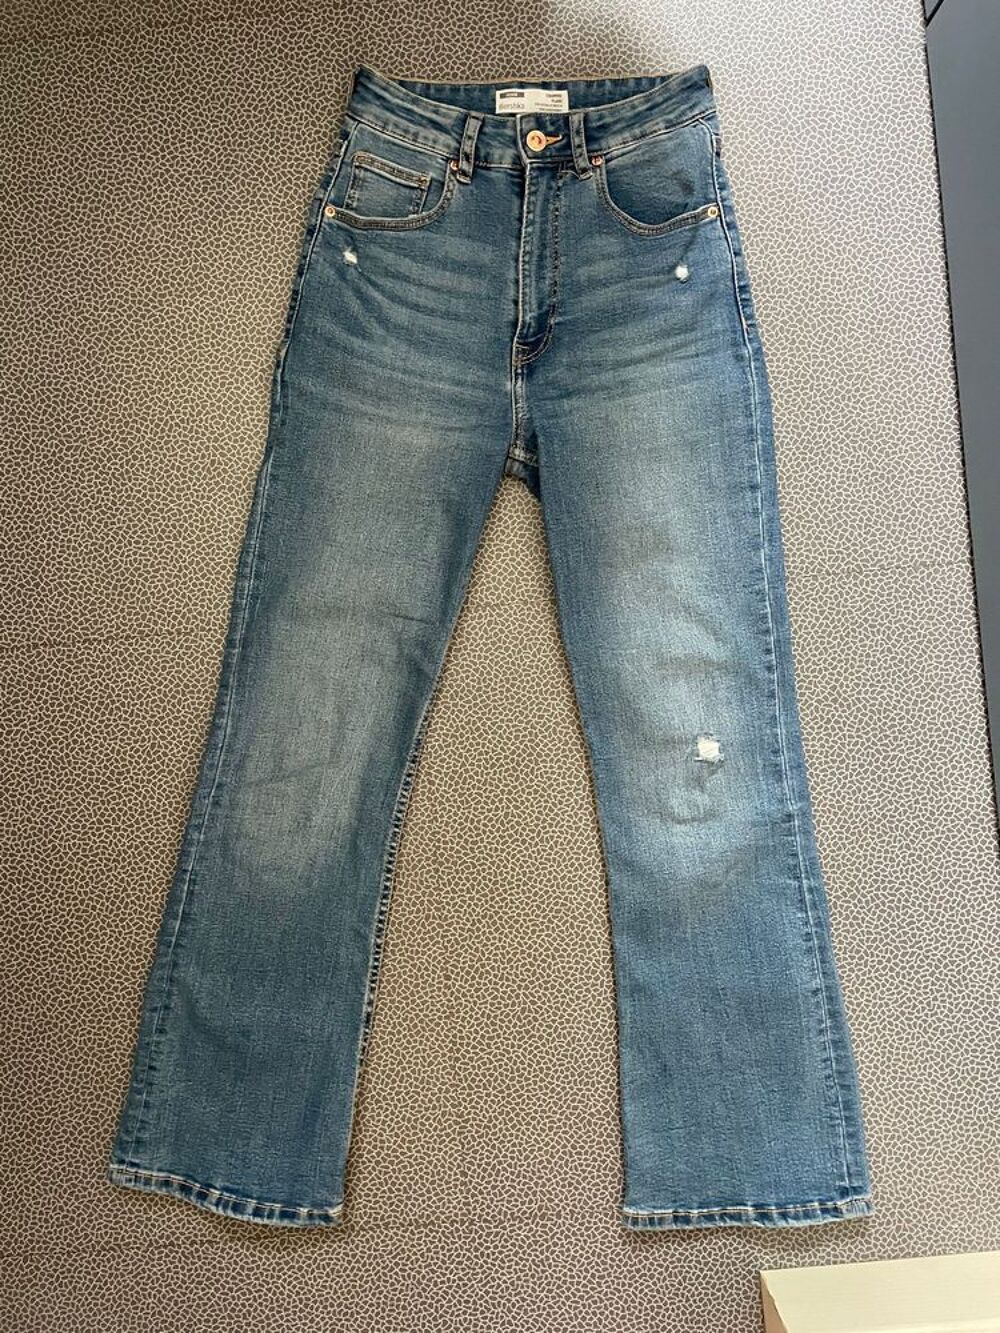 Pantalon jean flare taille 34 Vtements